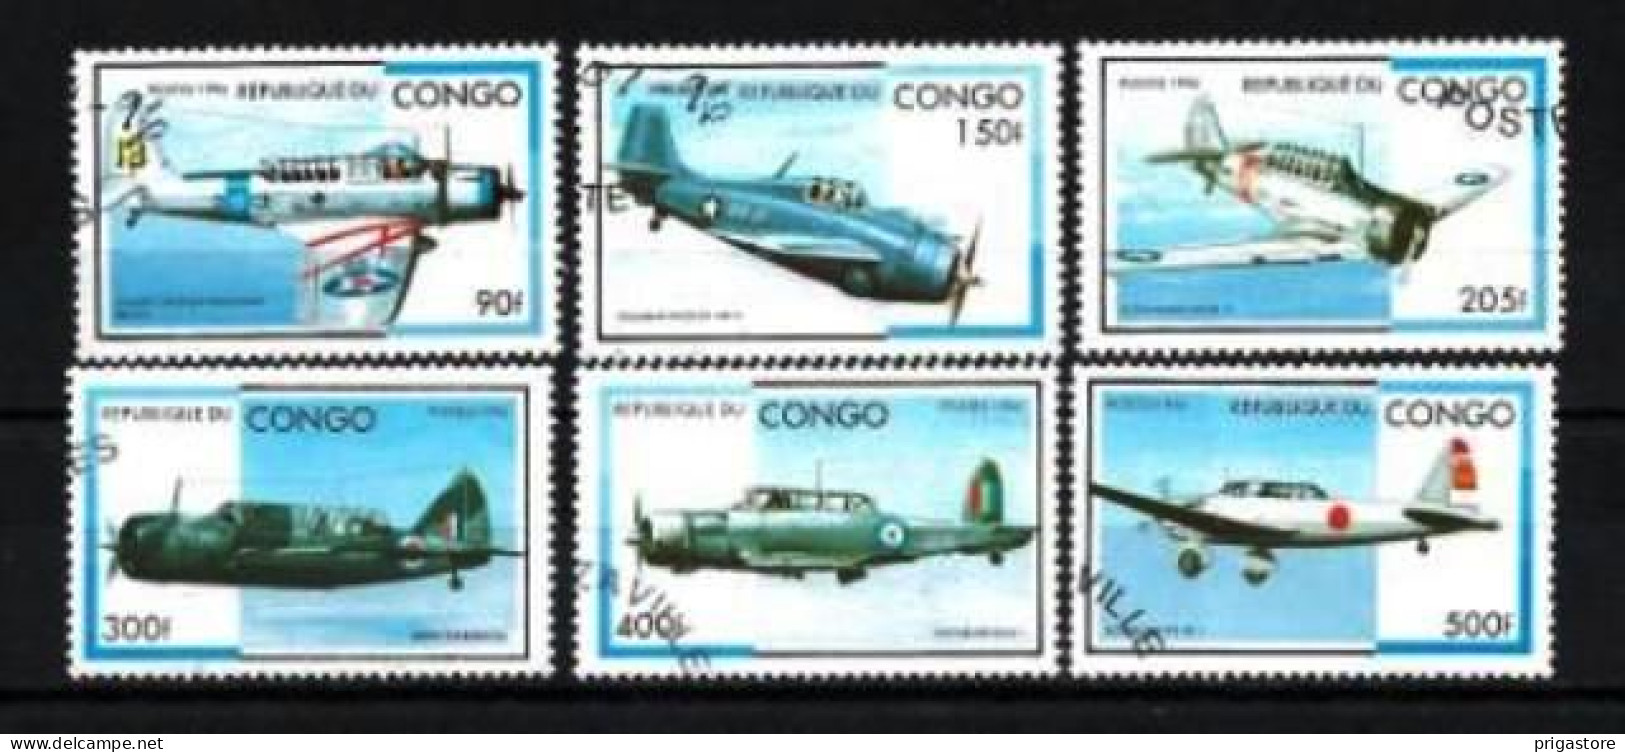 Congo 1996 Avions (39) Yvert N° 1026 N à 1026 T Oblitéré Used - Gebraucht